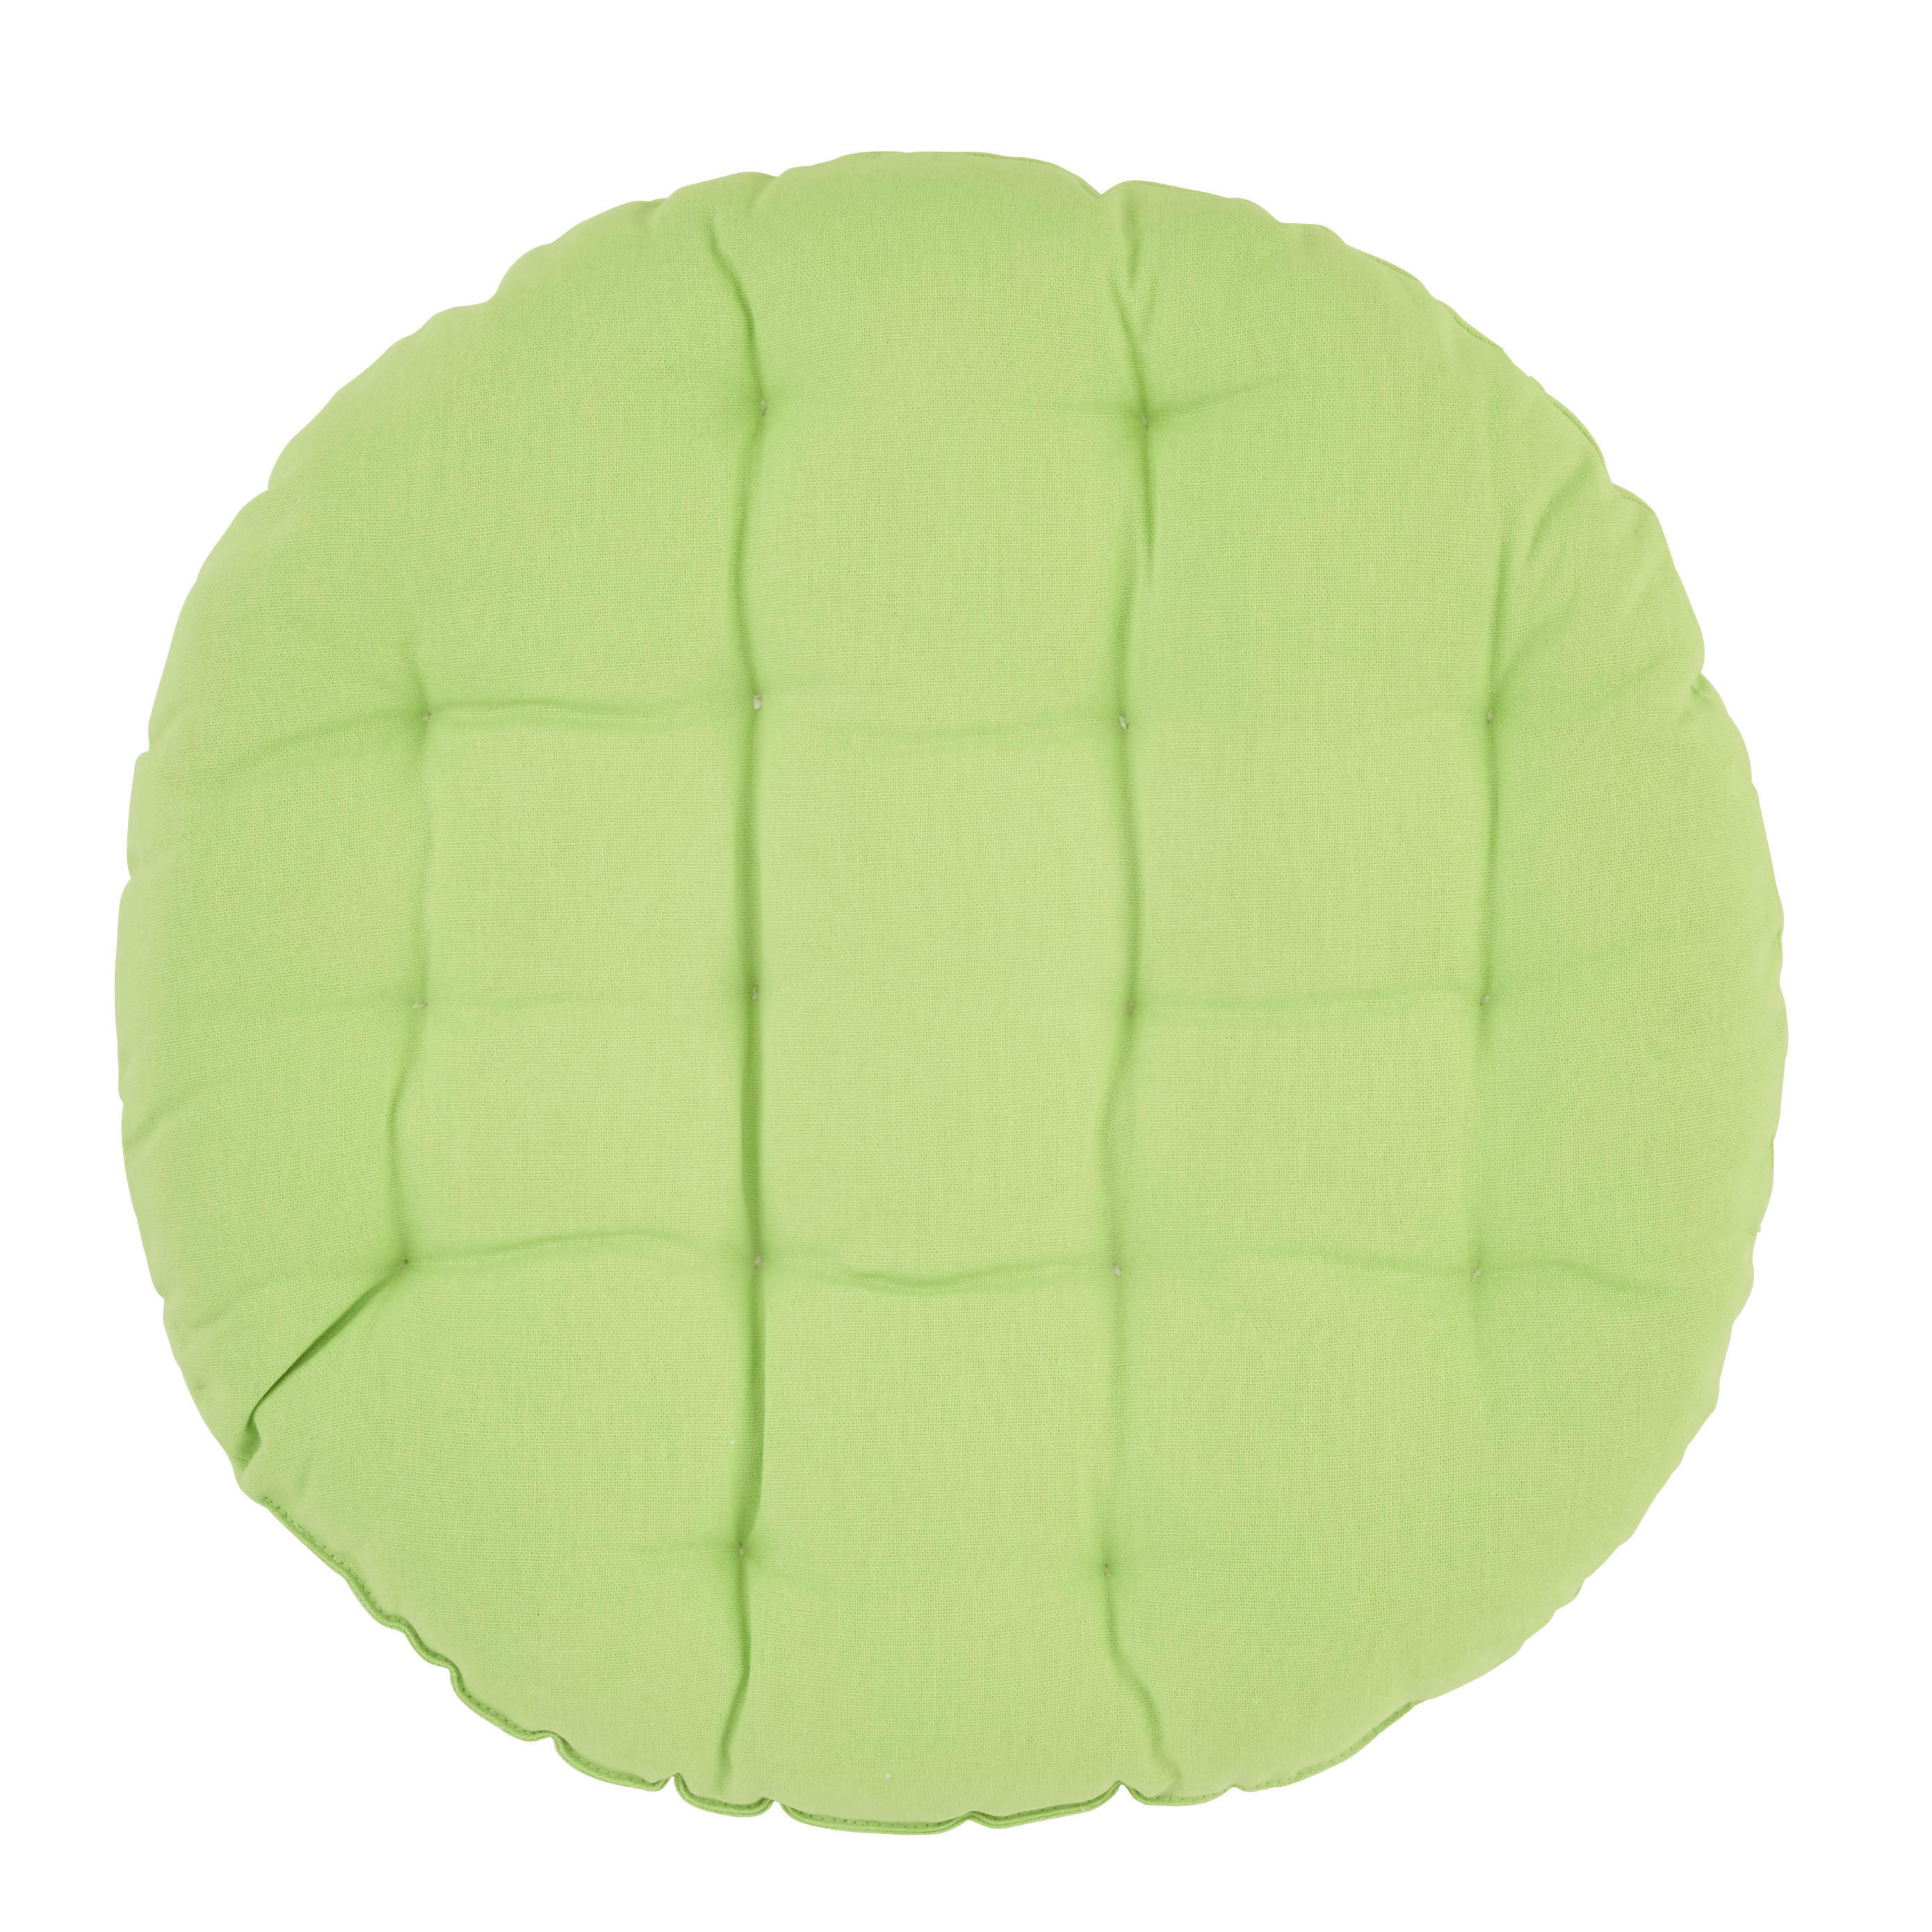 JASTUK ZA SEDENJE  40 cm   - zelena, Dizajnerski, tekstil (40cm) - Boxxx